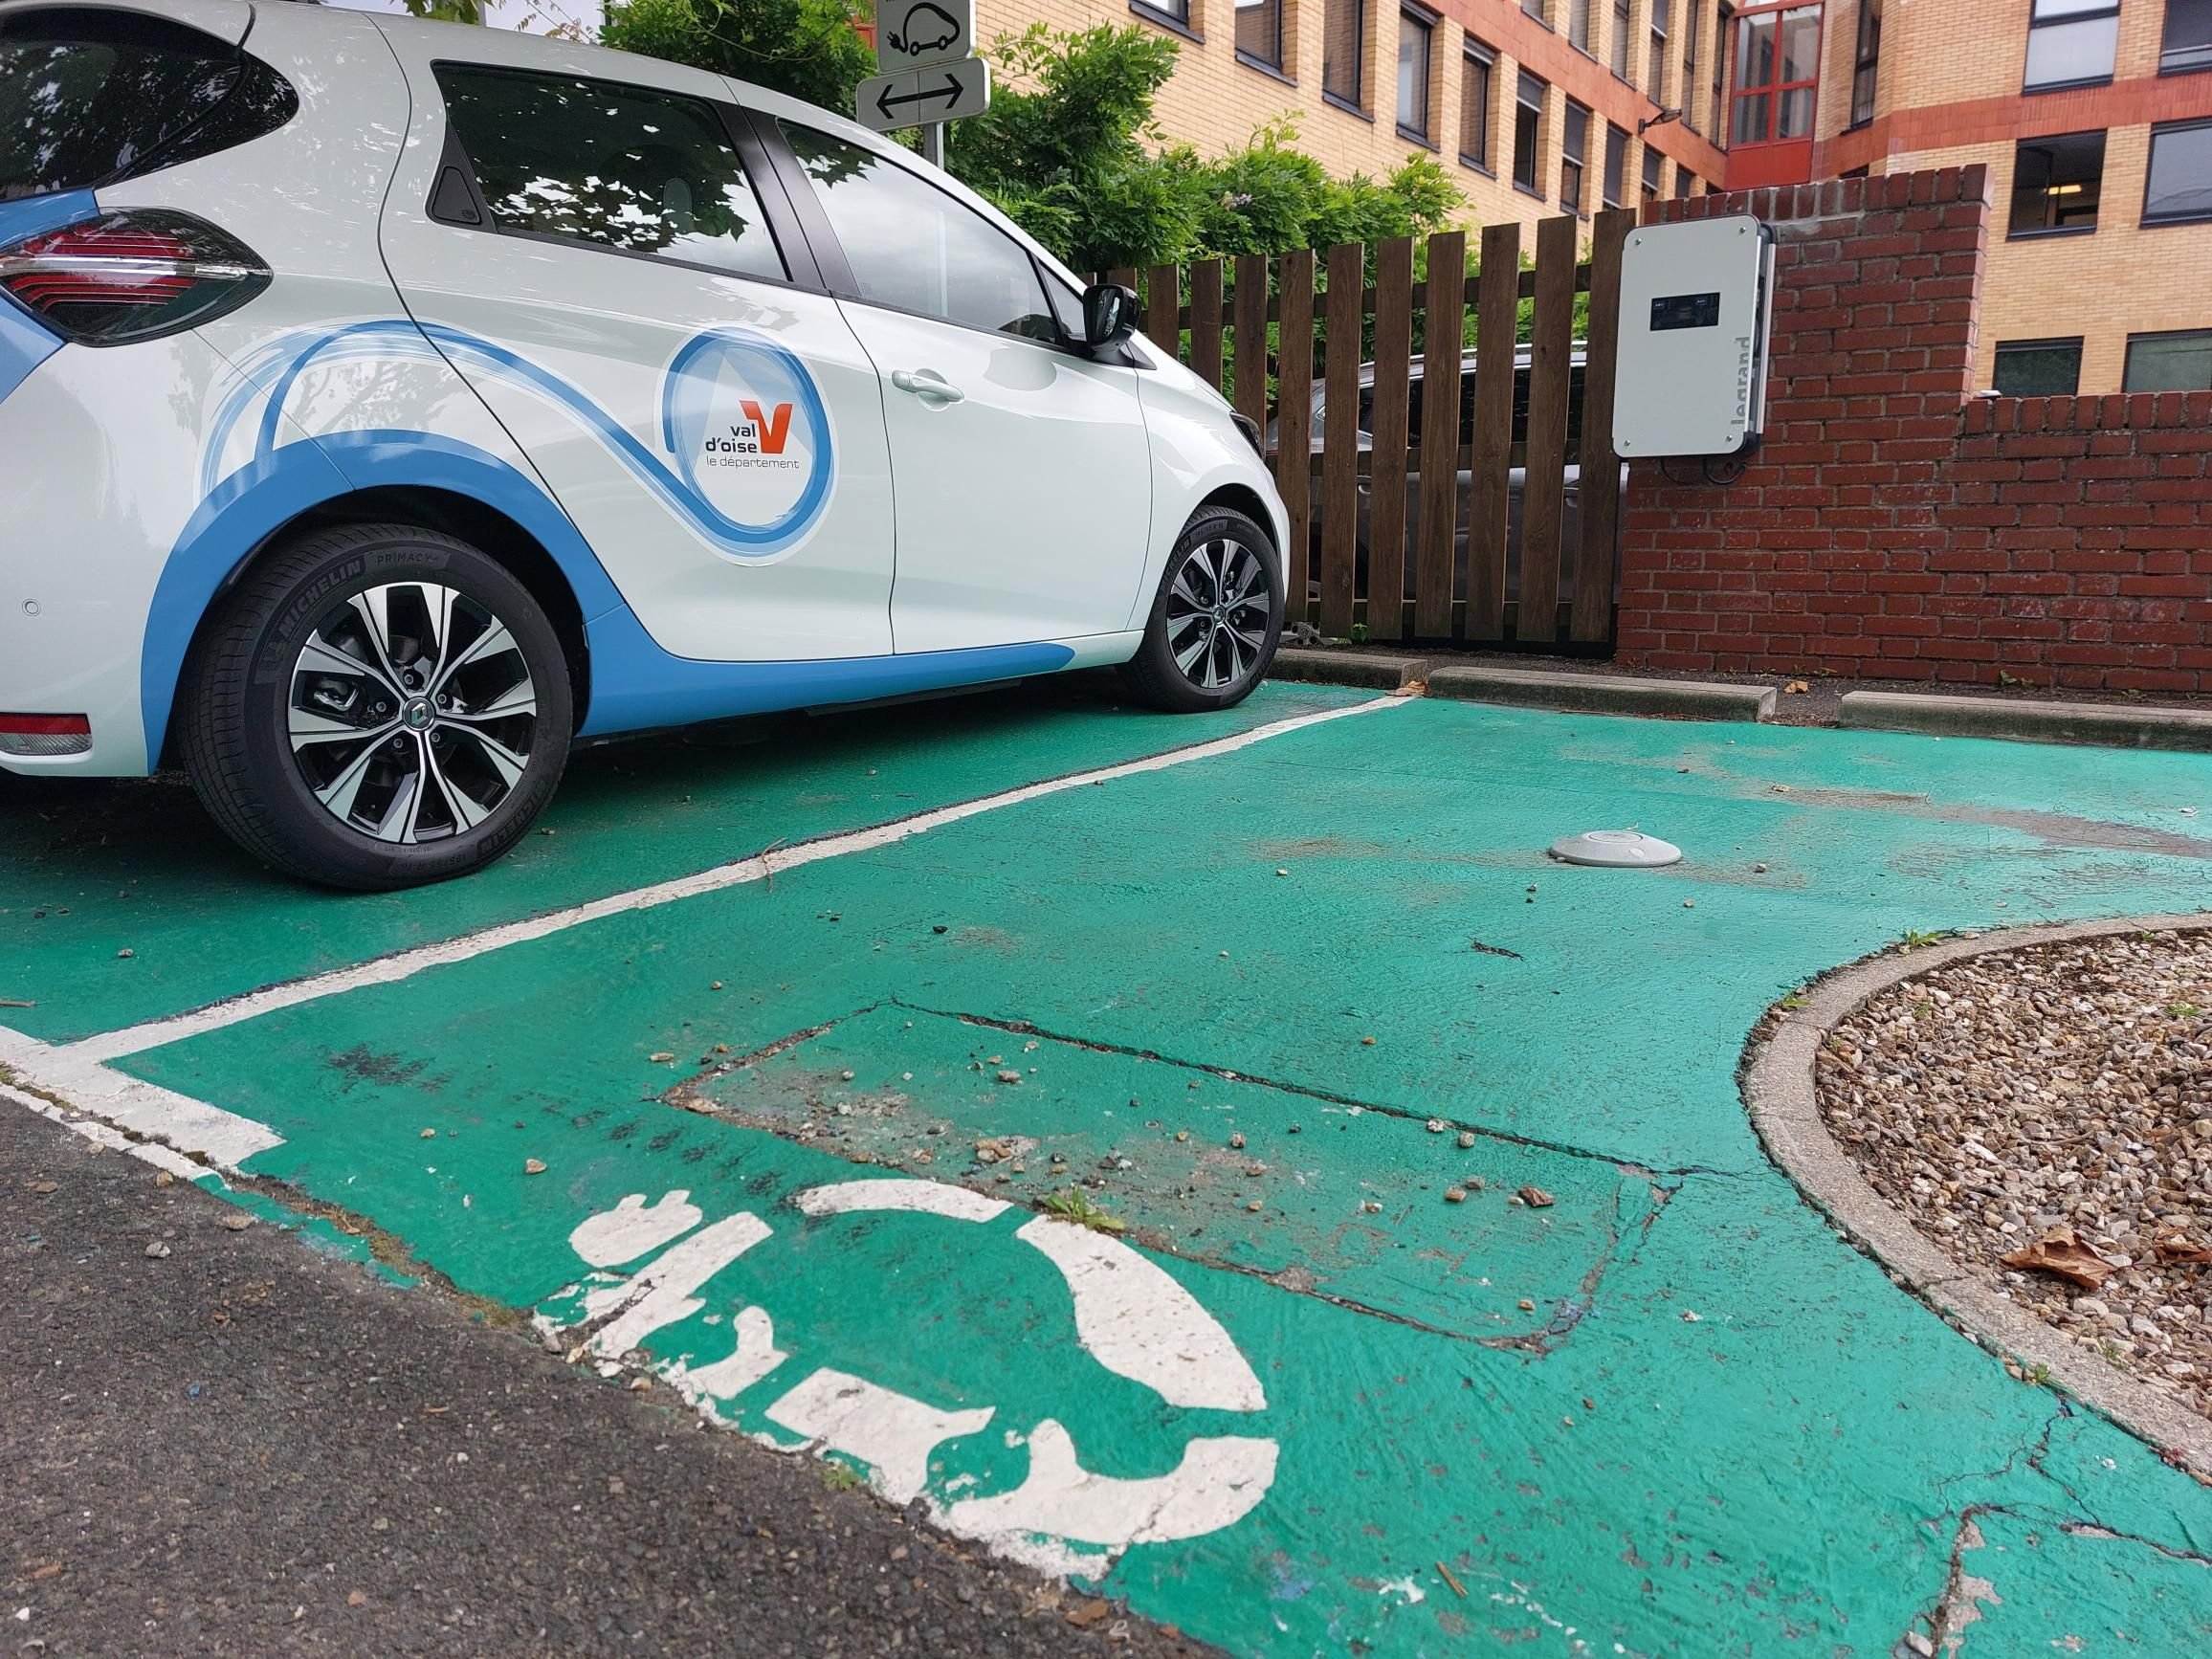 Cergy. Le Syndicat d'Energie du Val-d'Oise (SEDVO) prévoit d'implanter 160 bornes de recharge pour véhicules électriques à l'horizon 2026. (Illustration) LP/Christophe Lefèvre.